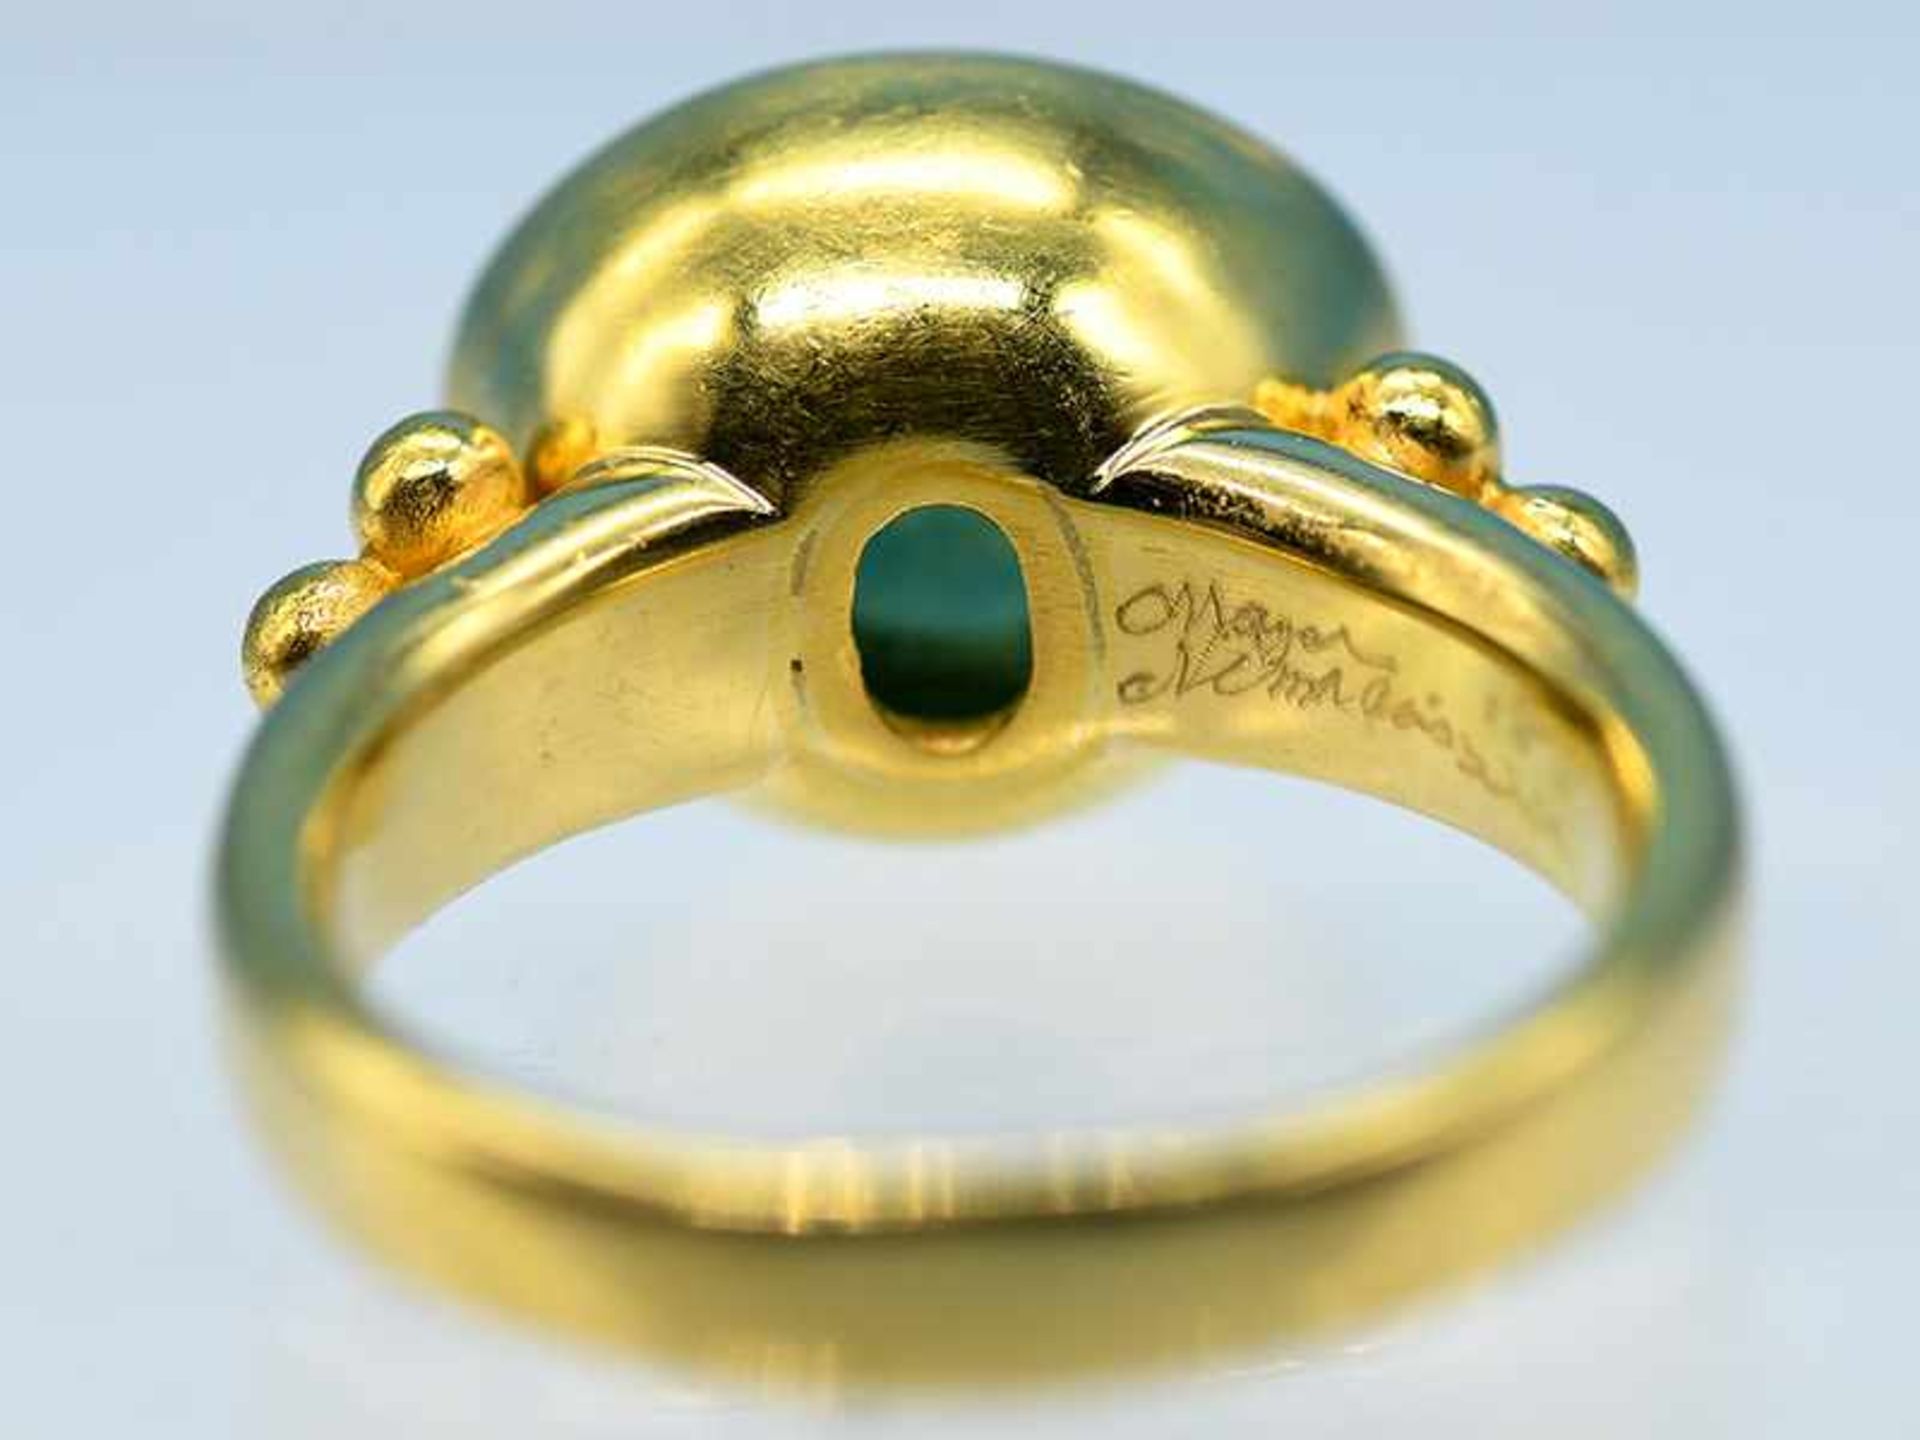 Massiver Ring mit Turmalin Cabochon, Goldschmiedearbeit, 21. Jh. 750/- Gelbgold. Gesamtgewicht ca. - Bild 4 aus 5